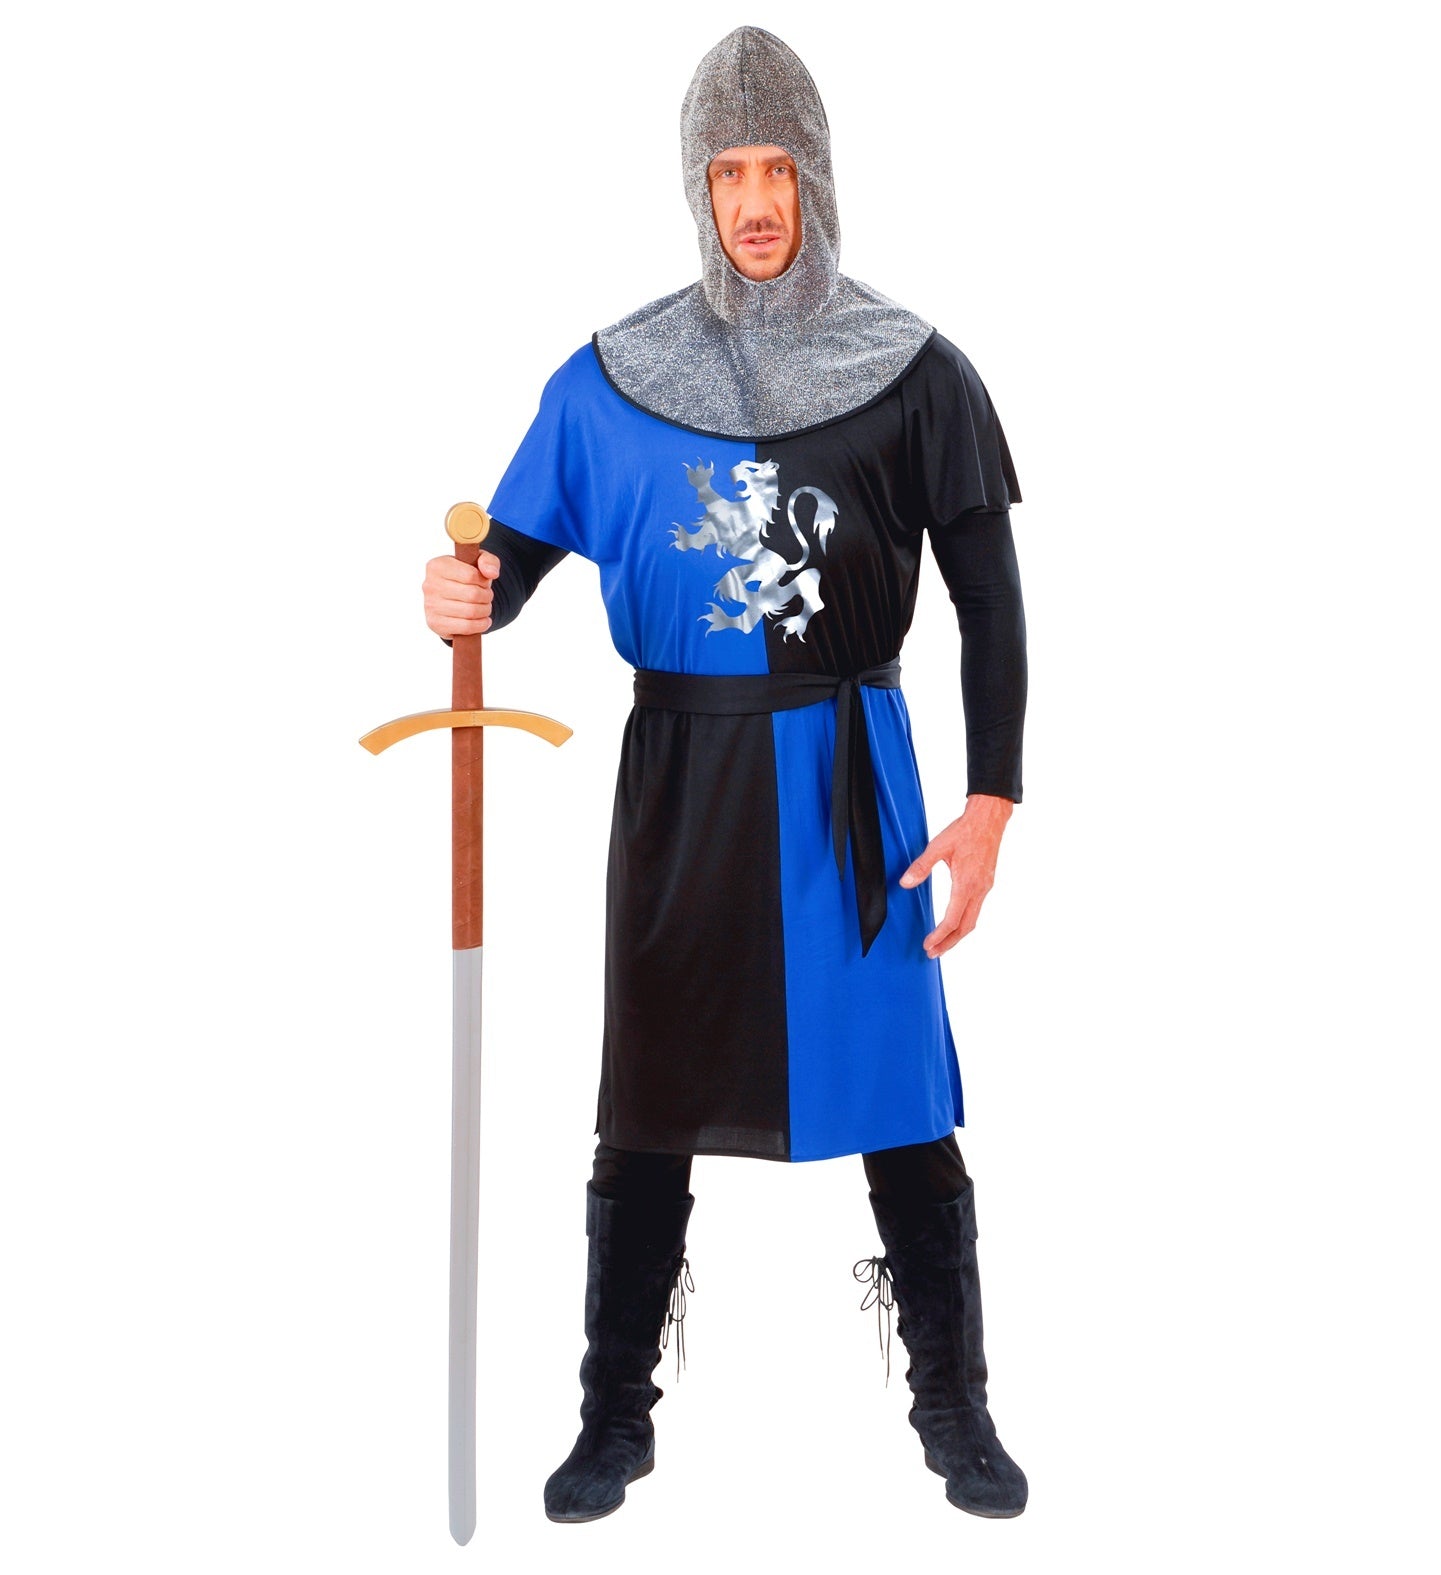 Widmann - Middeleeuwse & Renaissance Strijders Kostuum - Middeleeuwse Ridder Strijder In De Frontlinie - Man - blauw,zwart,zilver - Medium - Carnavalskleding - Verkleedkleding